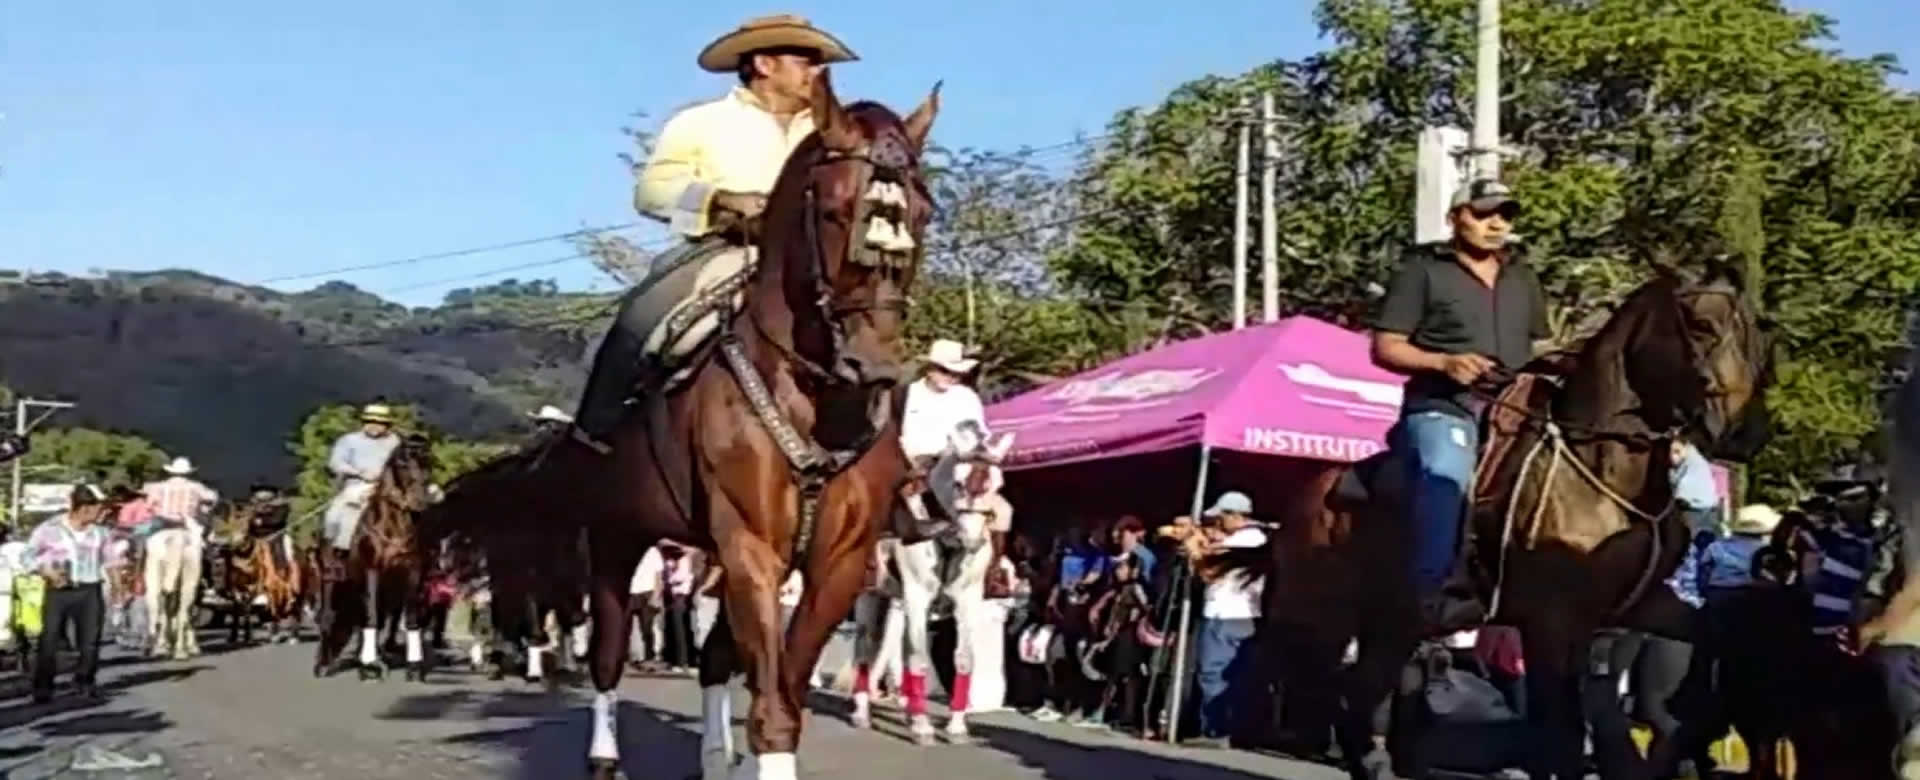 Jinotega: Desfile hípico para despedir fiestas en honor a la Santa Cruz